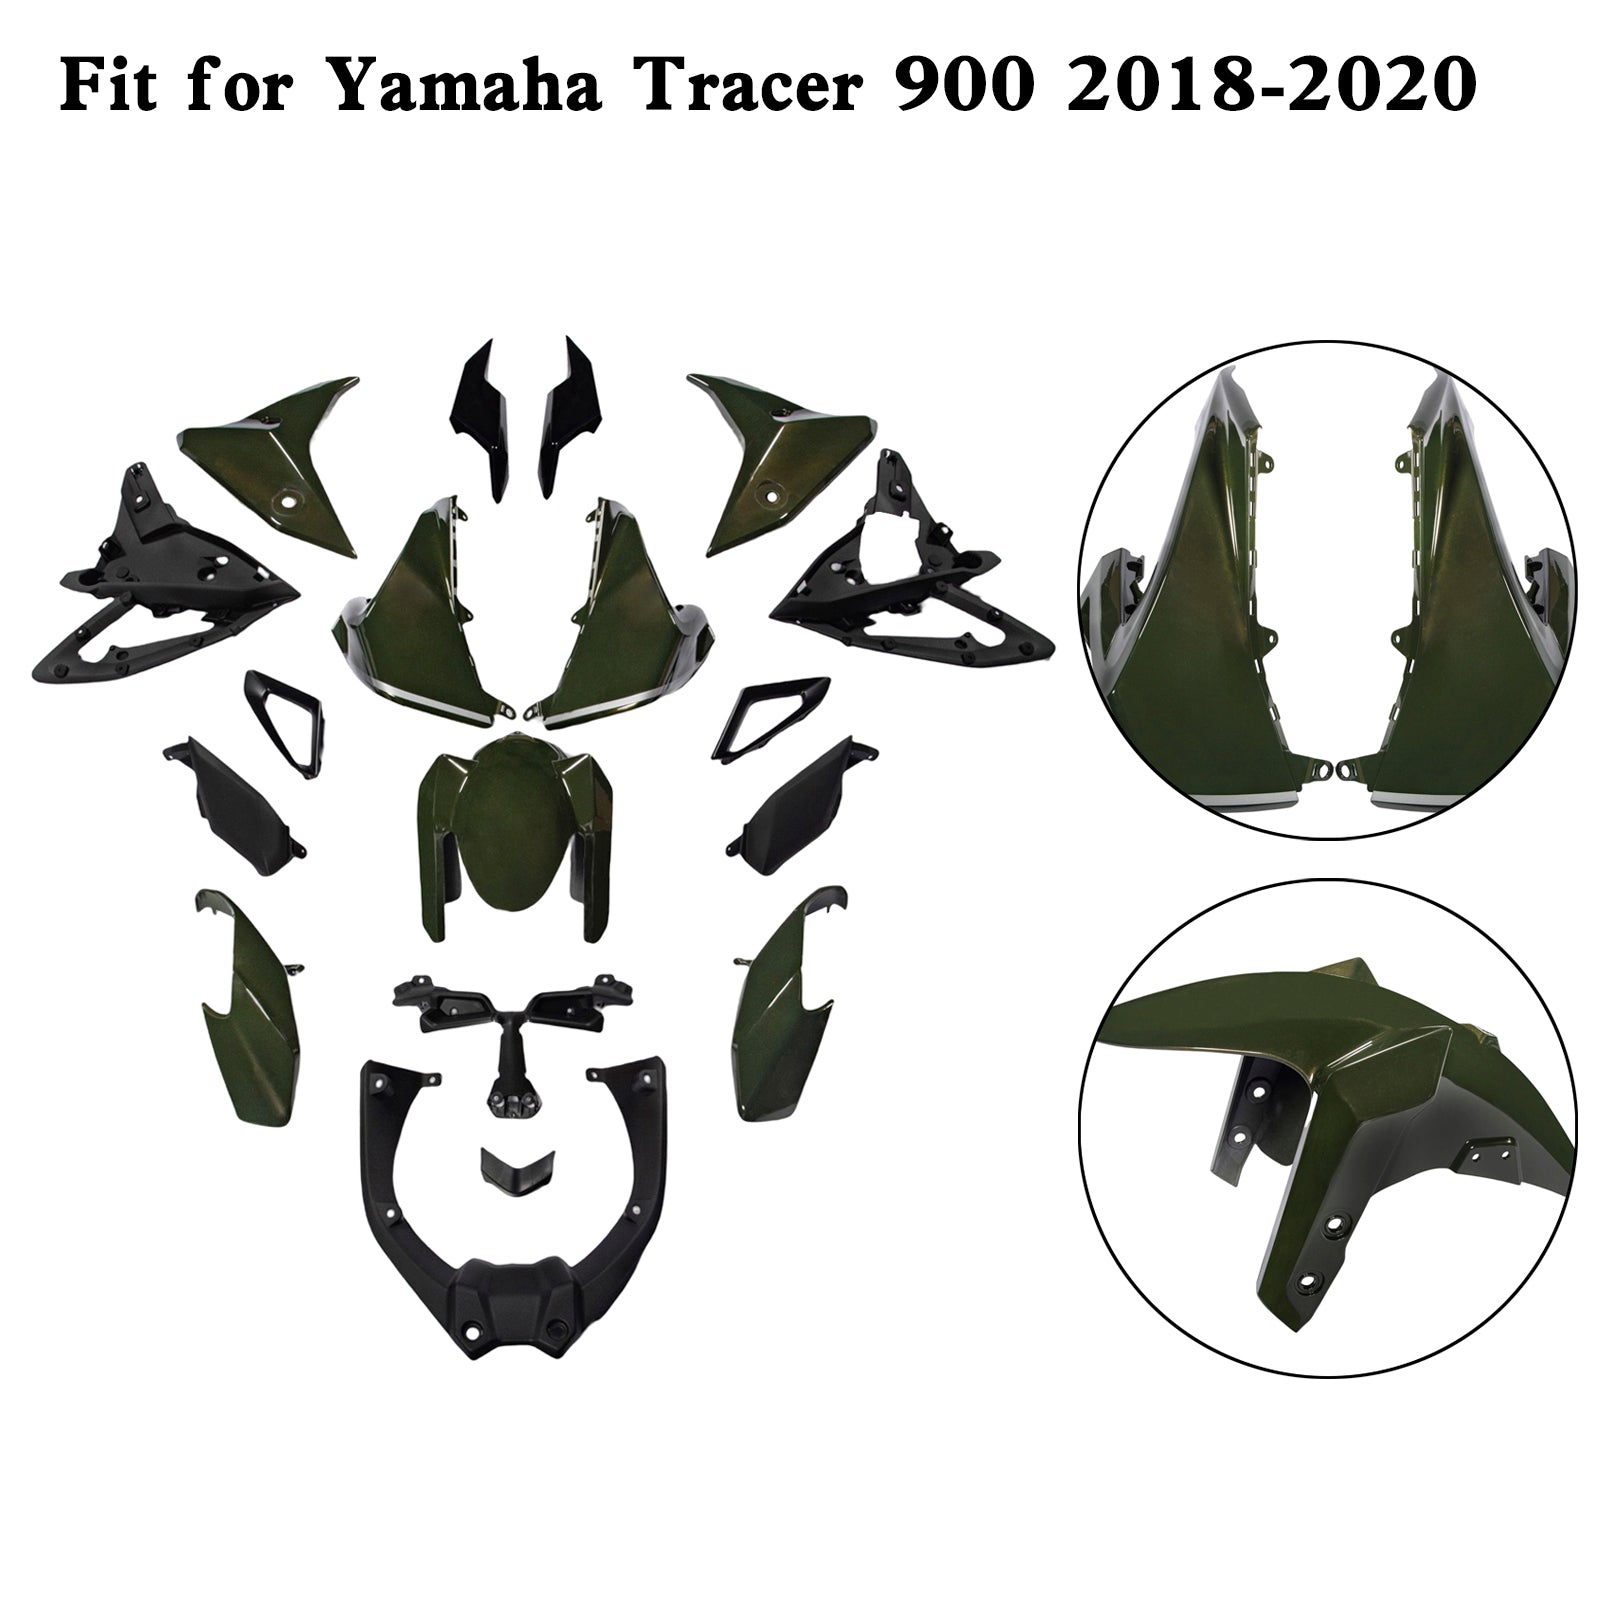 Kit carena Amotopart Yamaha 2018-2020 Tracer 900